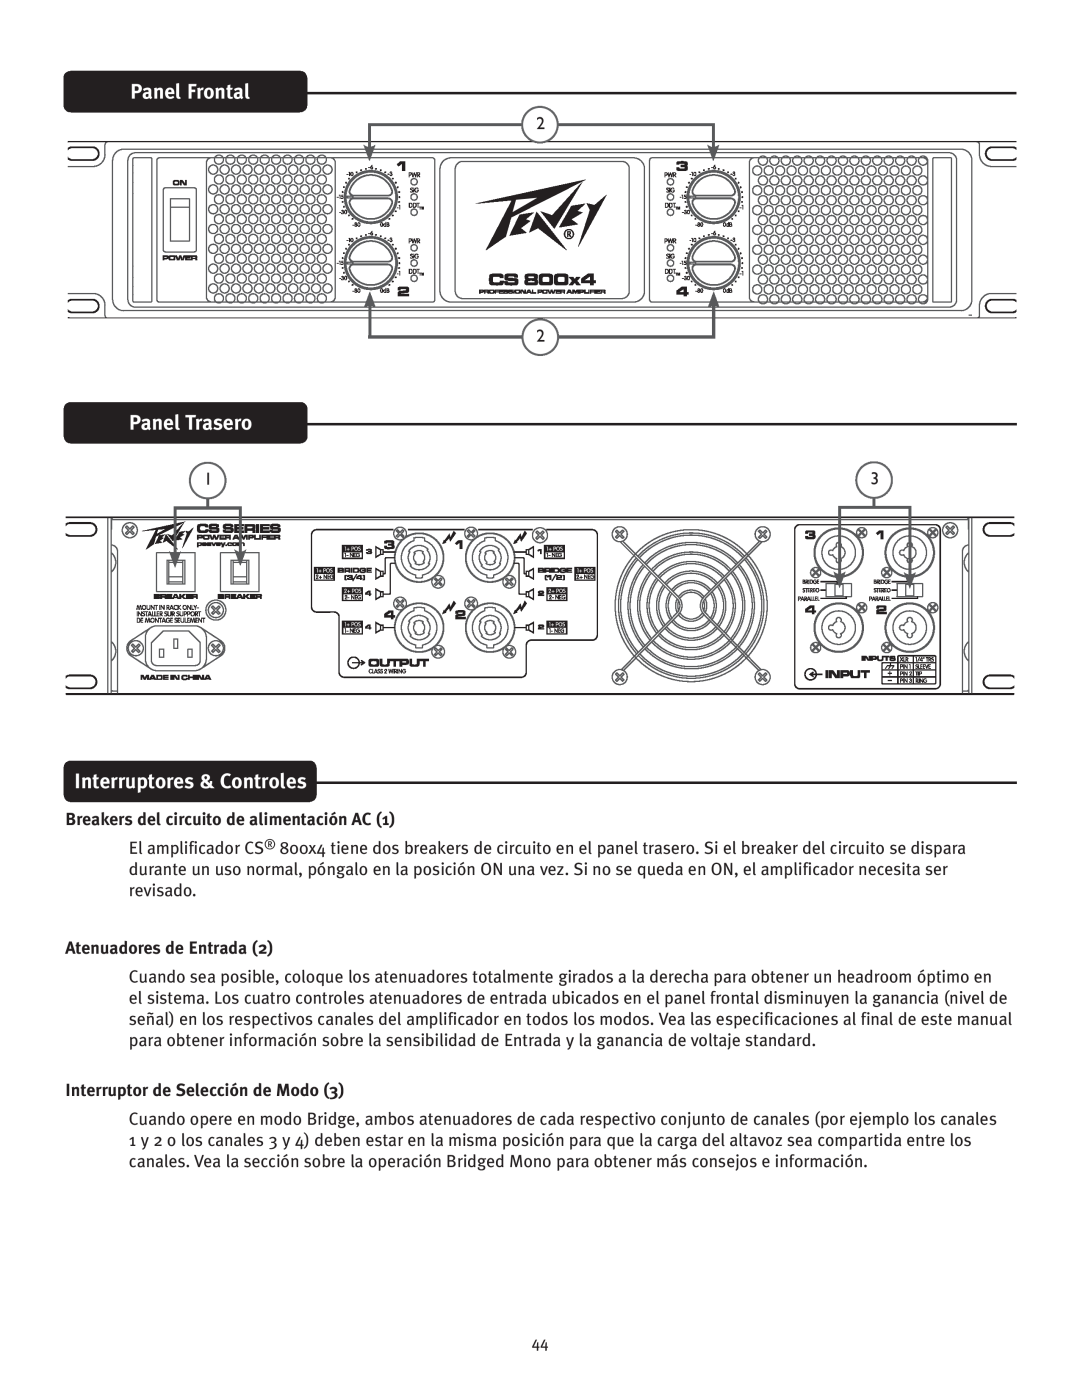 Peavey CS 800x4 Panel Frontal, Panel Trasero, Interruptores & Controles, Breakers del circuito de alimentación AC 